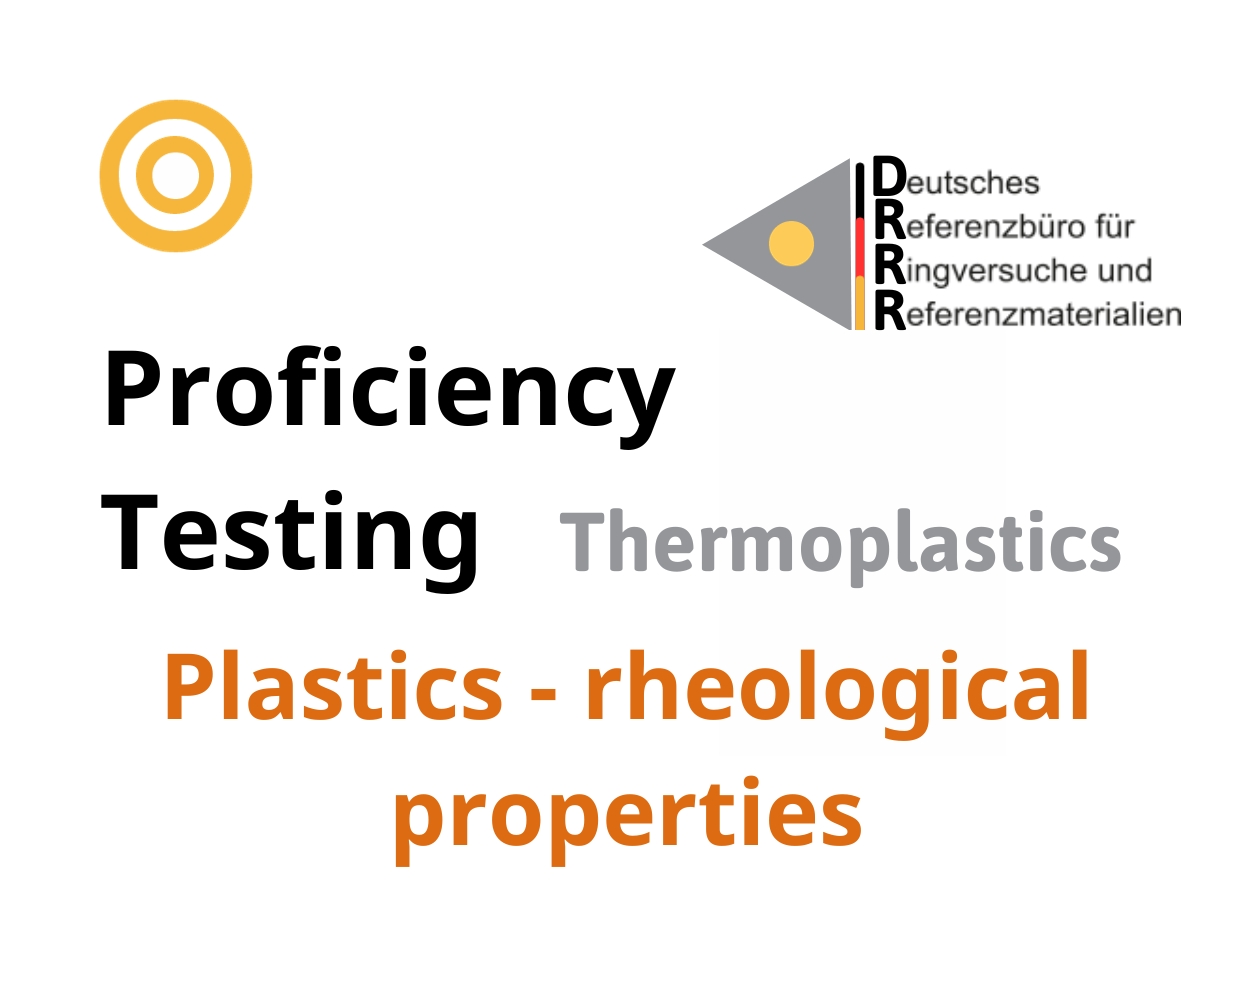 Thử nghiệm thành thạo (ISO 17043) nhựa nhiệt dẻo trên nền mẫu Plastics - rheological properties, Hãng DRRR, Đức